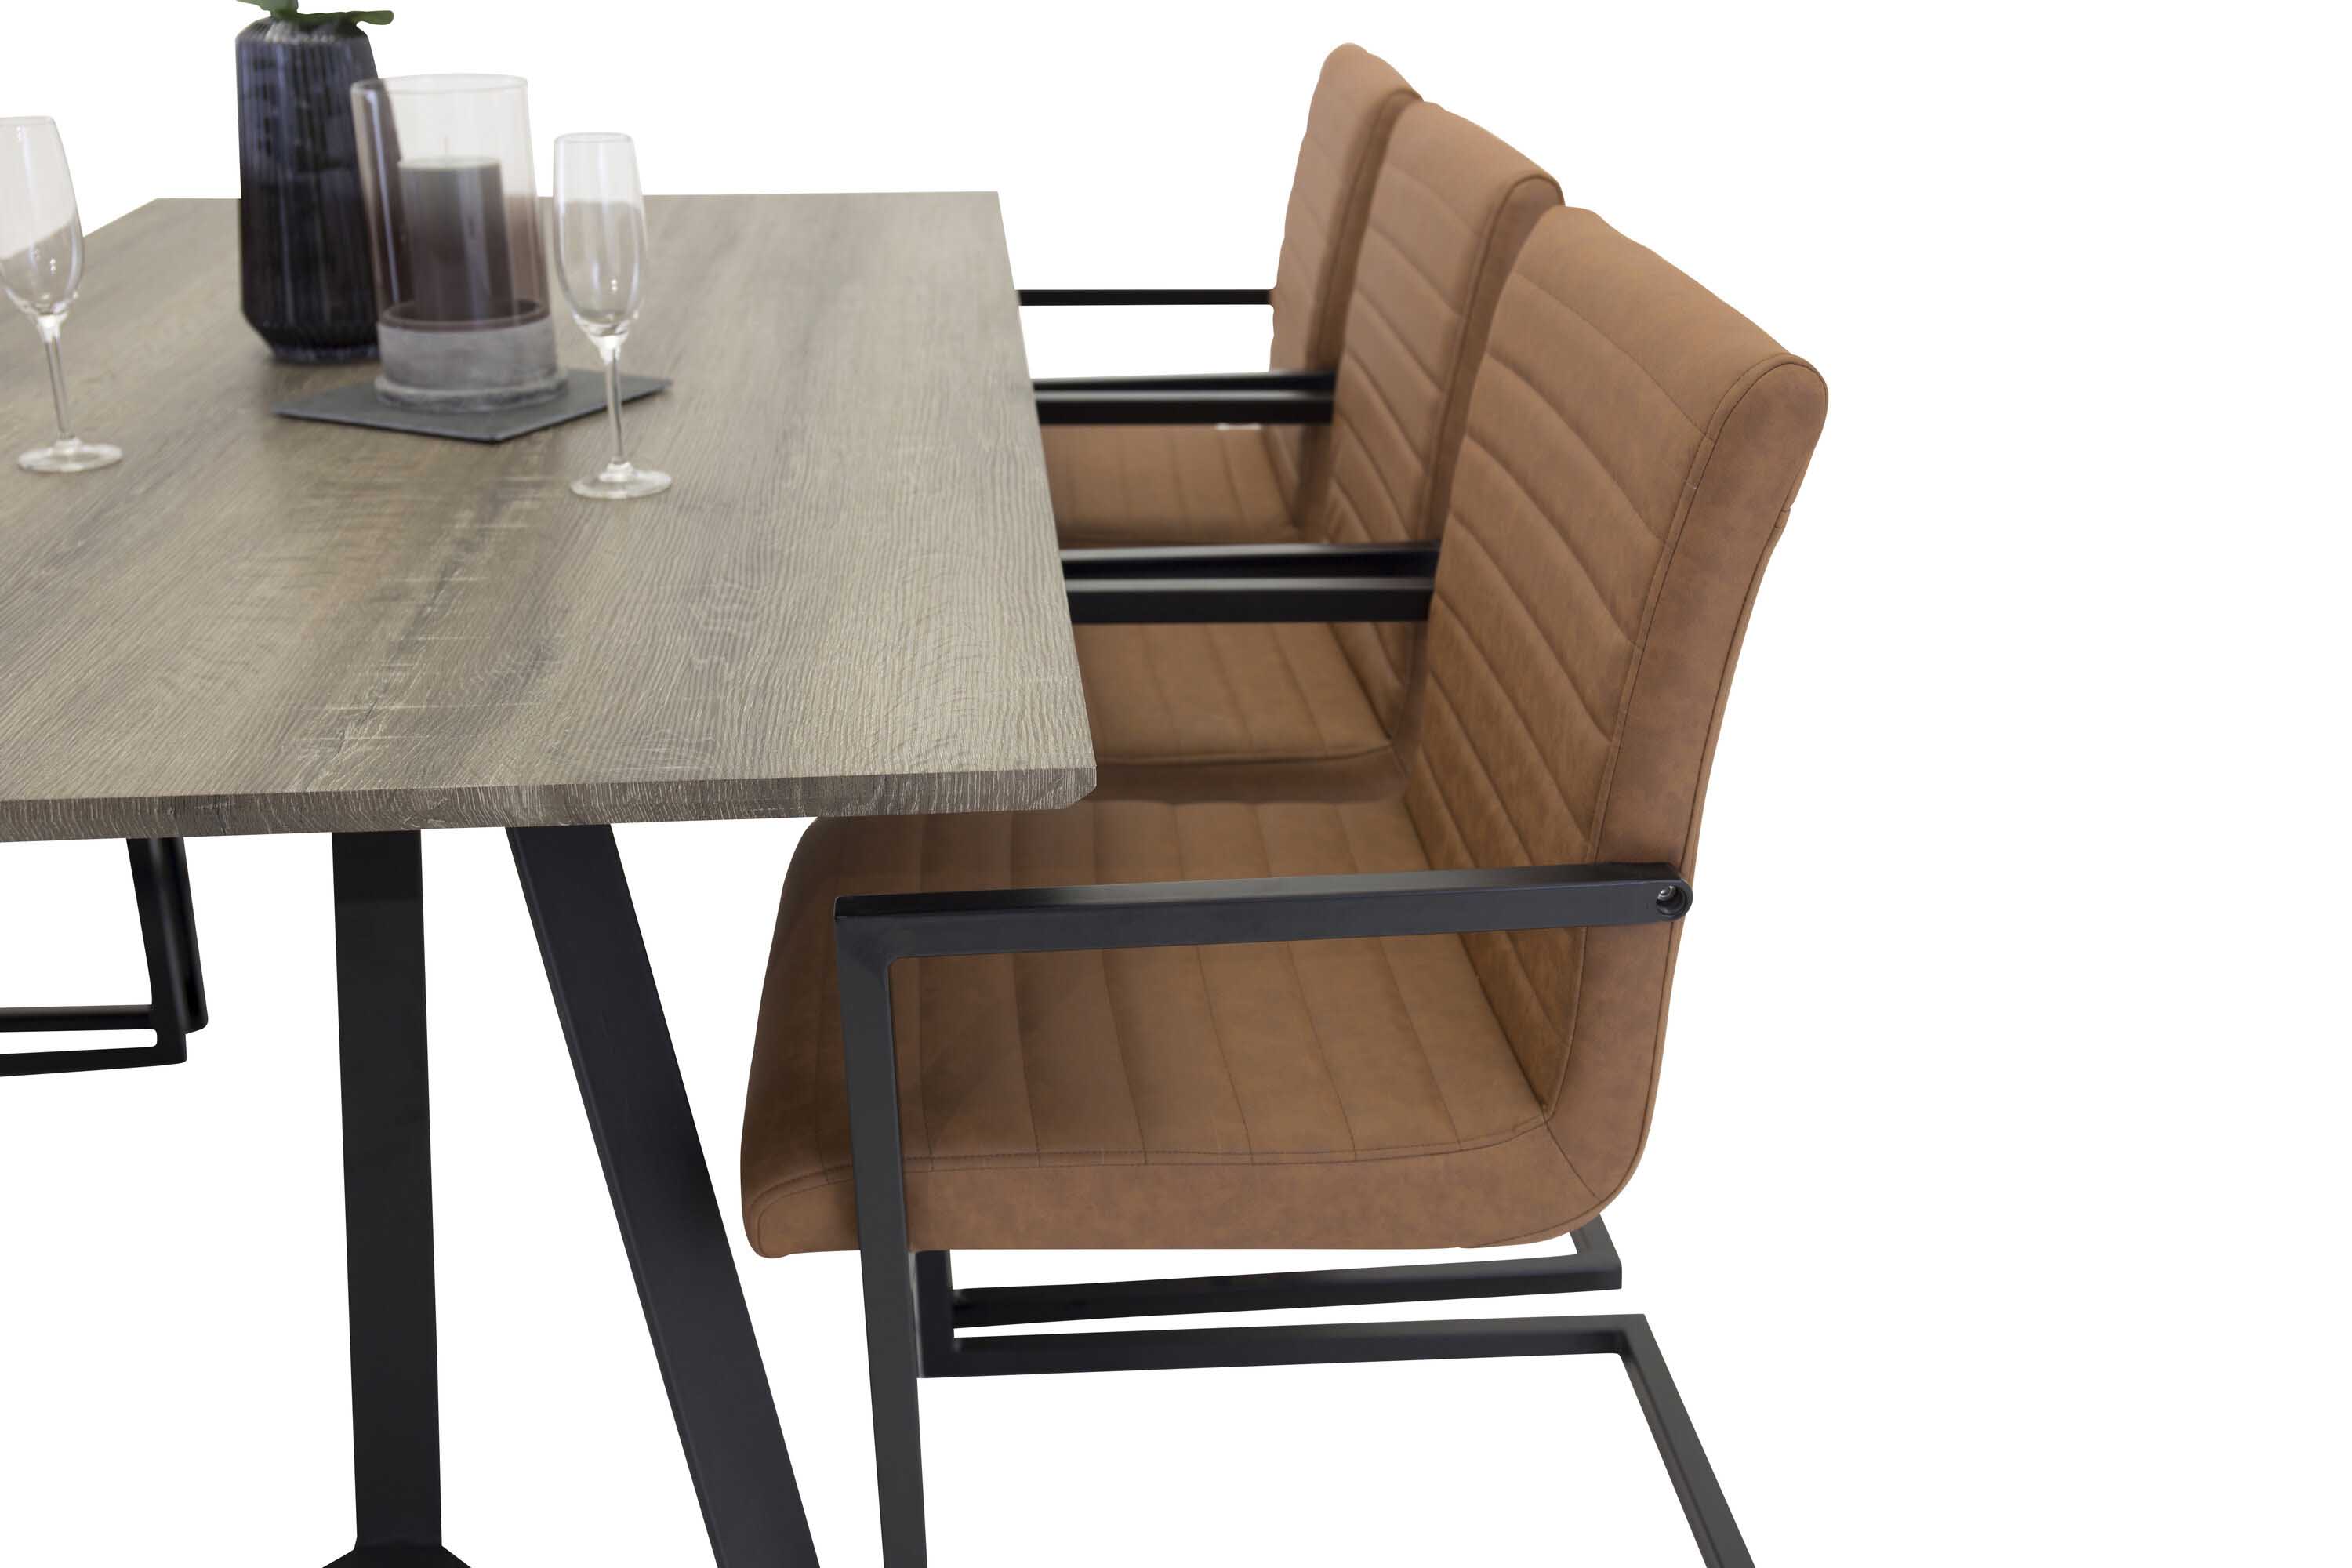 Venture Design Marina & Art spisebordssæt Grå/sort 6 st stole & borde 180 x 90 cm